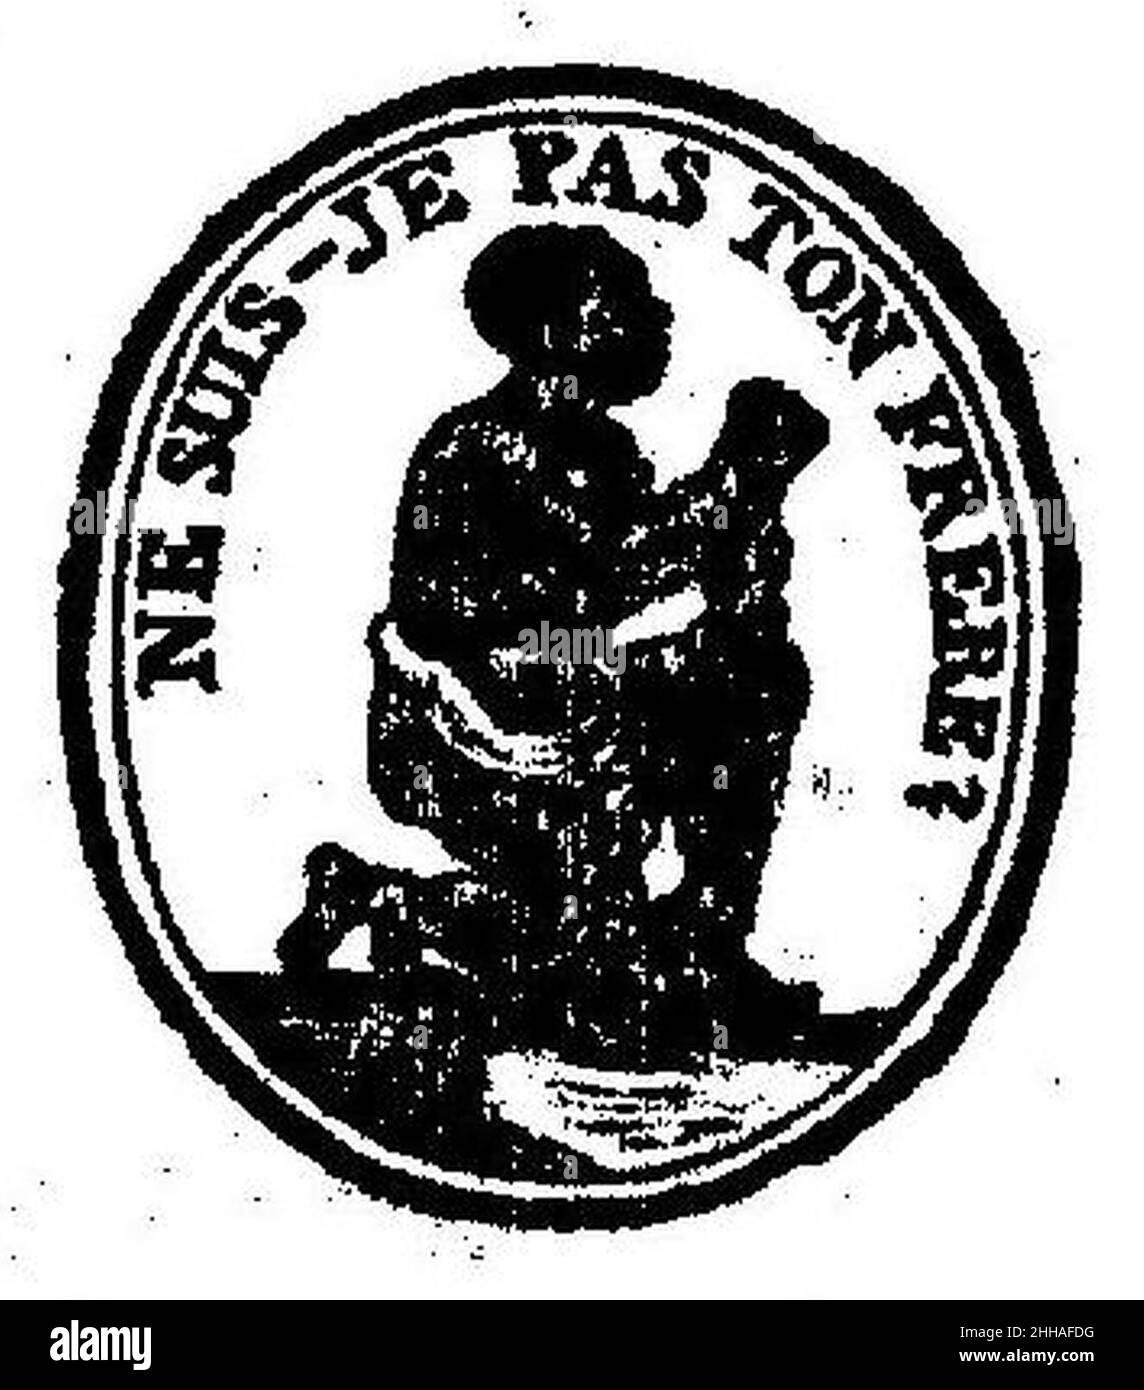 Société des amis des noirs - février 1790 (cropped). Stock Photo